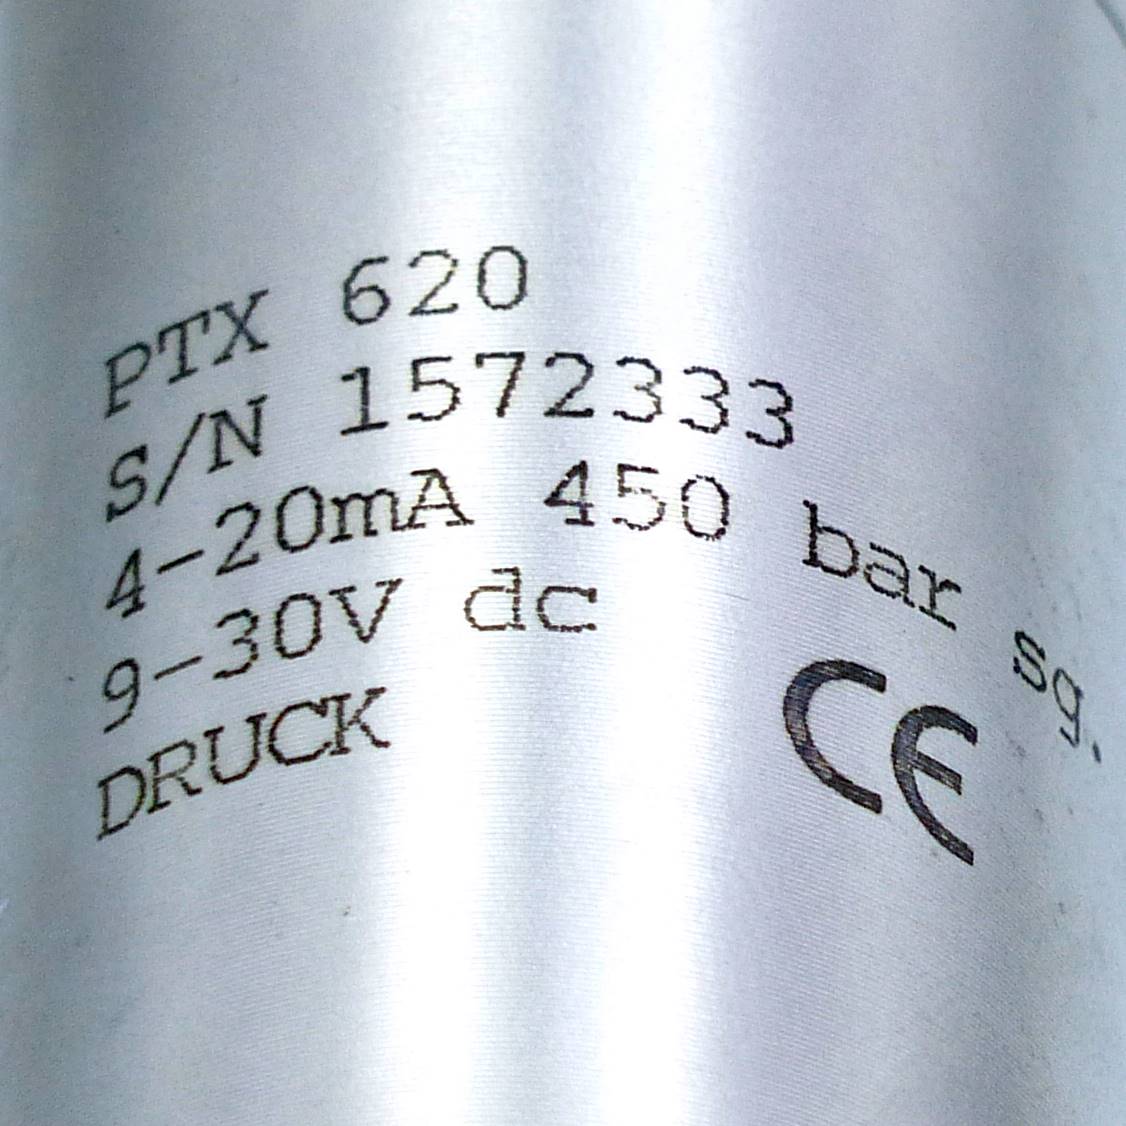 Pressure Transmitter PTX 620 